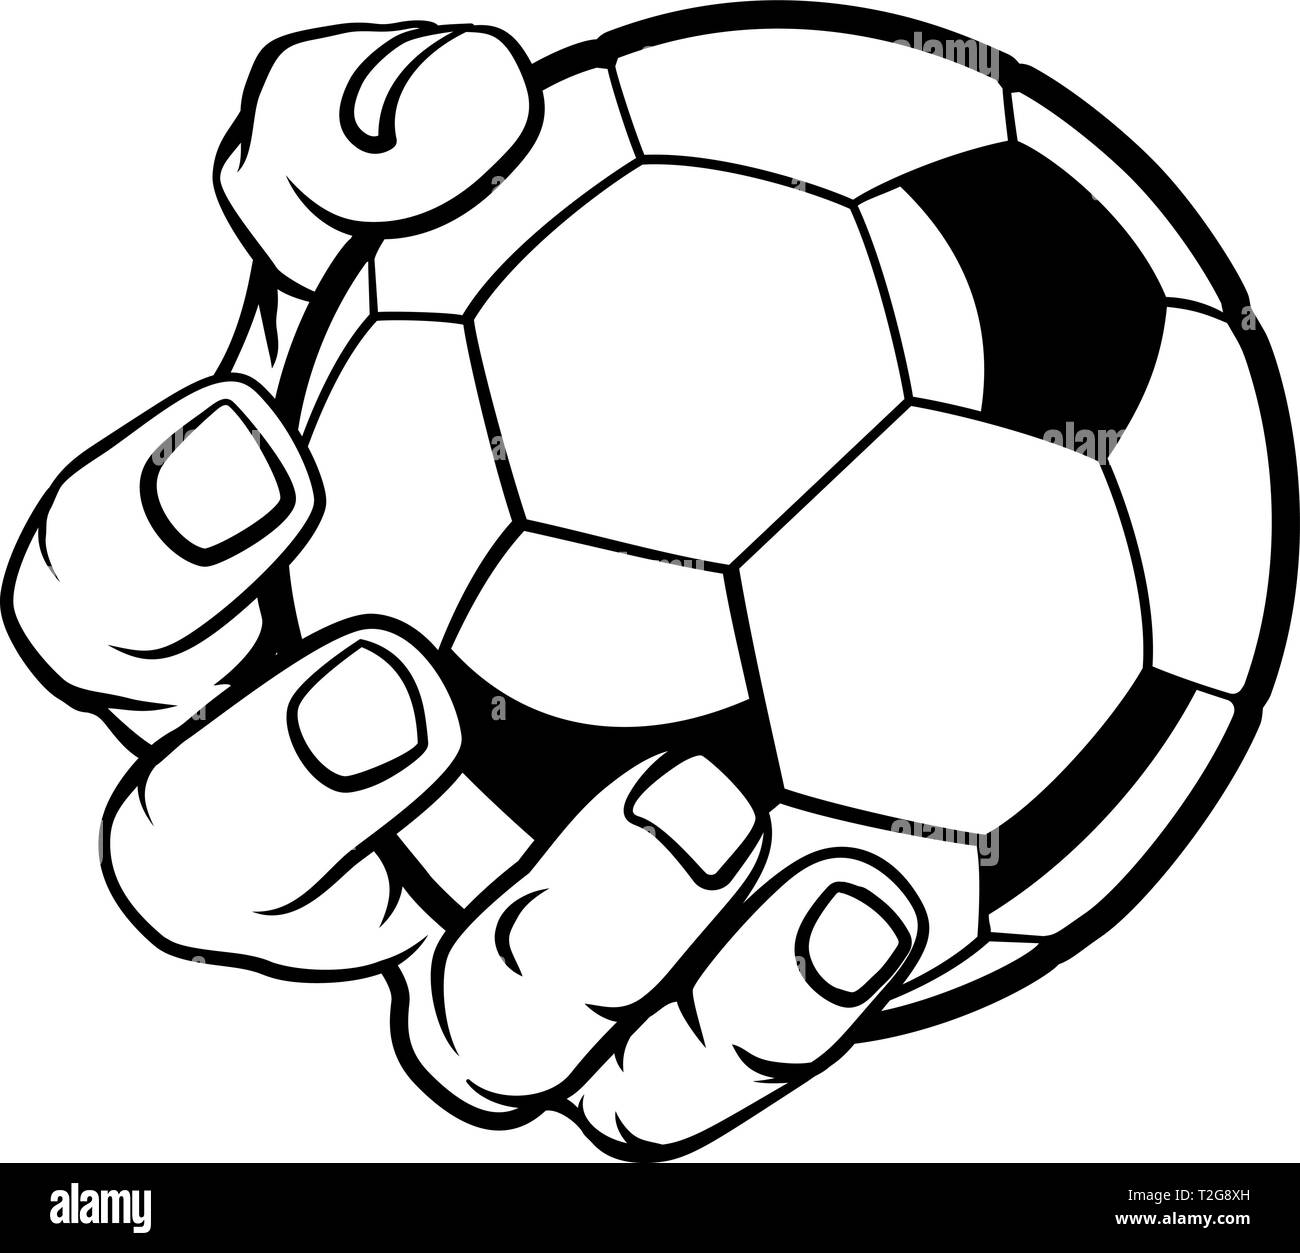 Hand Holding Soccer Ball Stock Vector